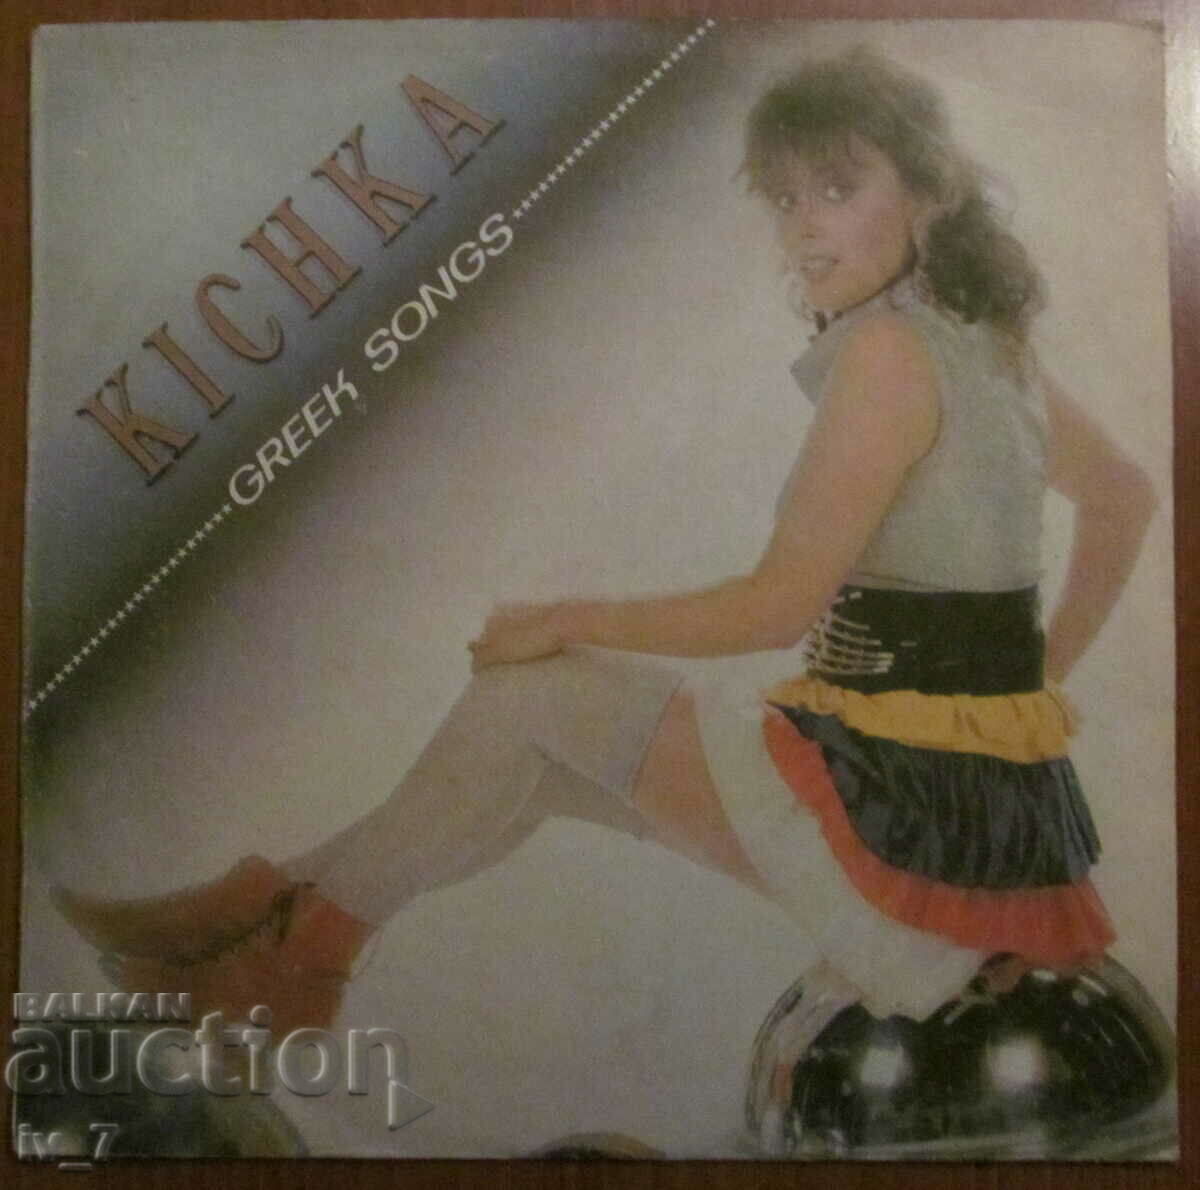 RECORD - KICKA BODUROVA, large format